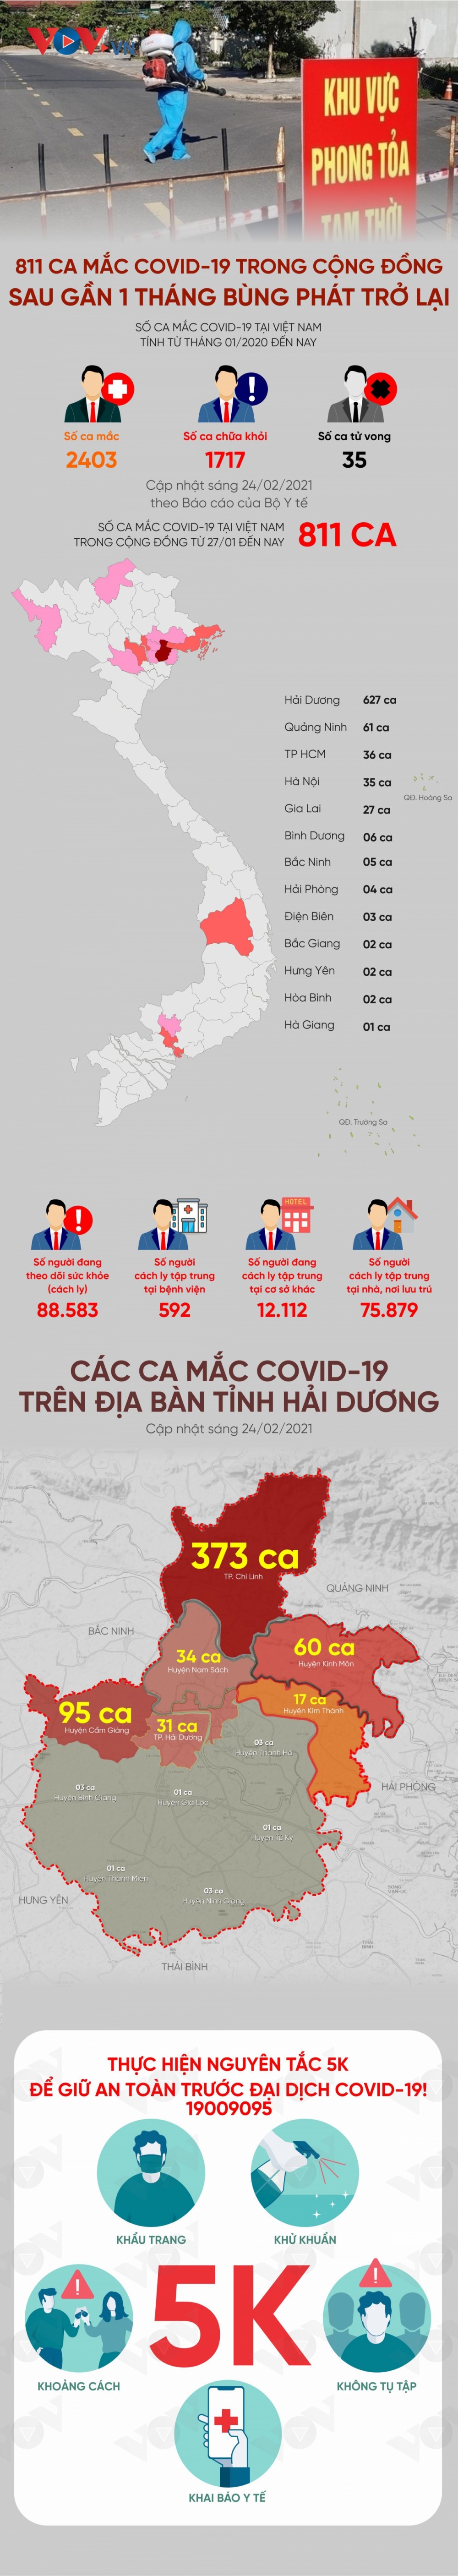 Infographics: Toàn cảnh diễn biến dịch Covid-19 ở Việt Nam sau gần 1 tháng bùng phát